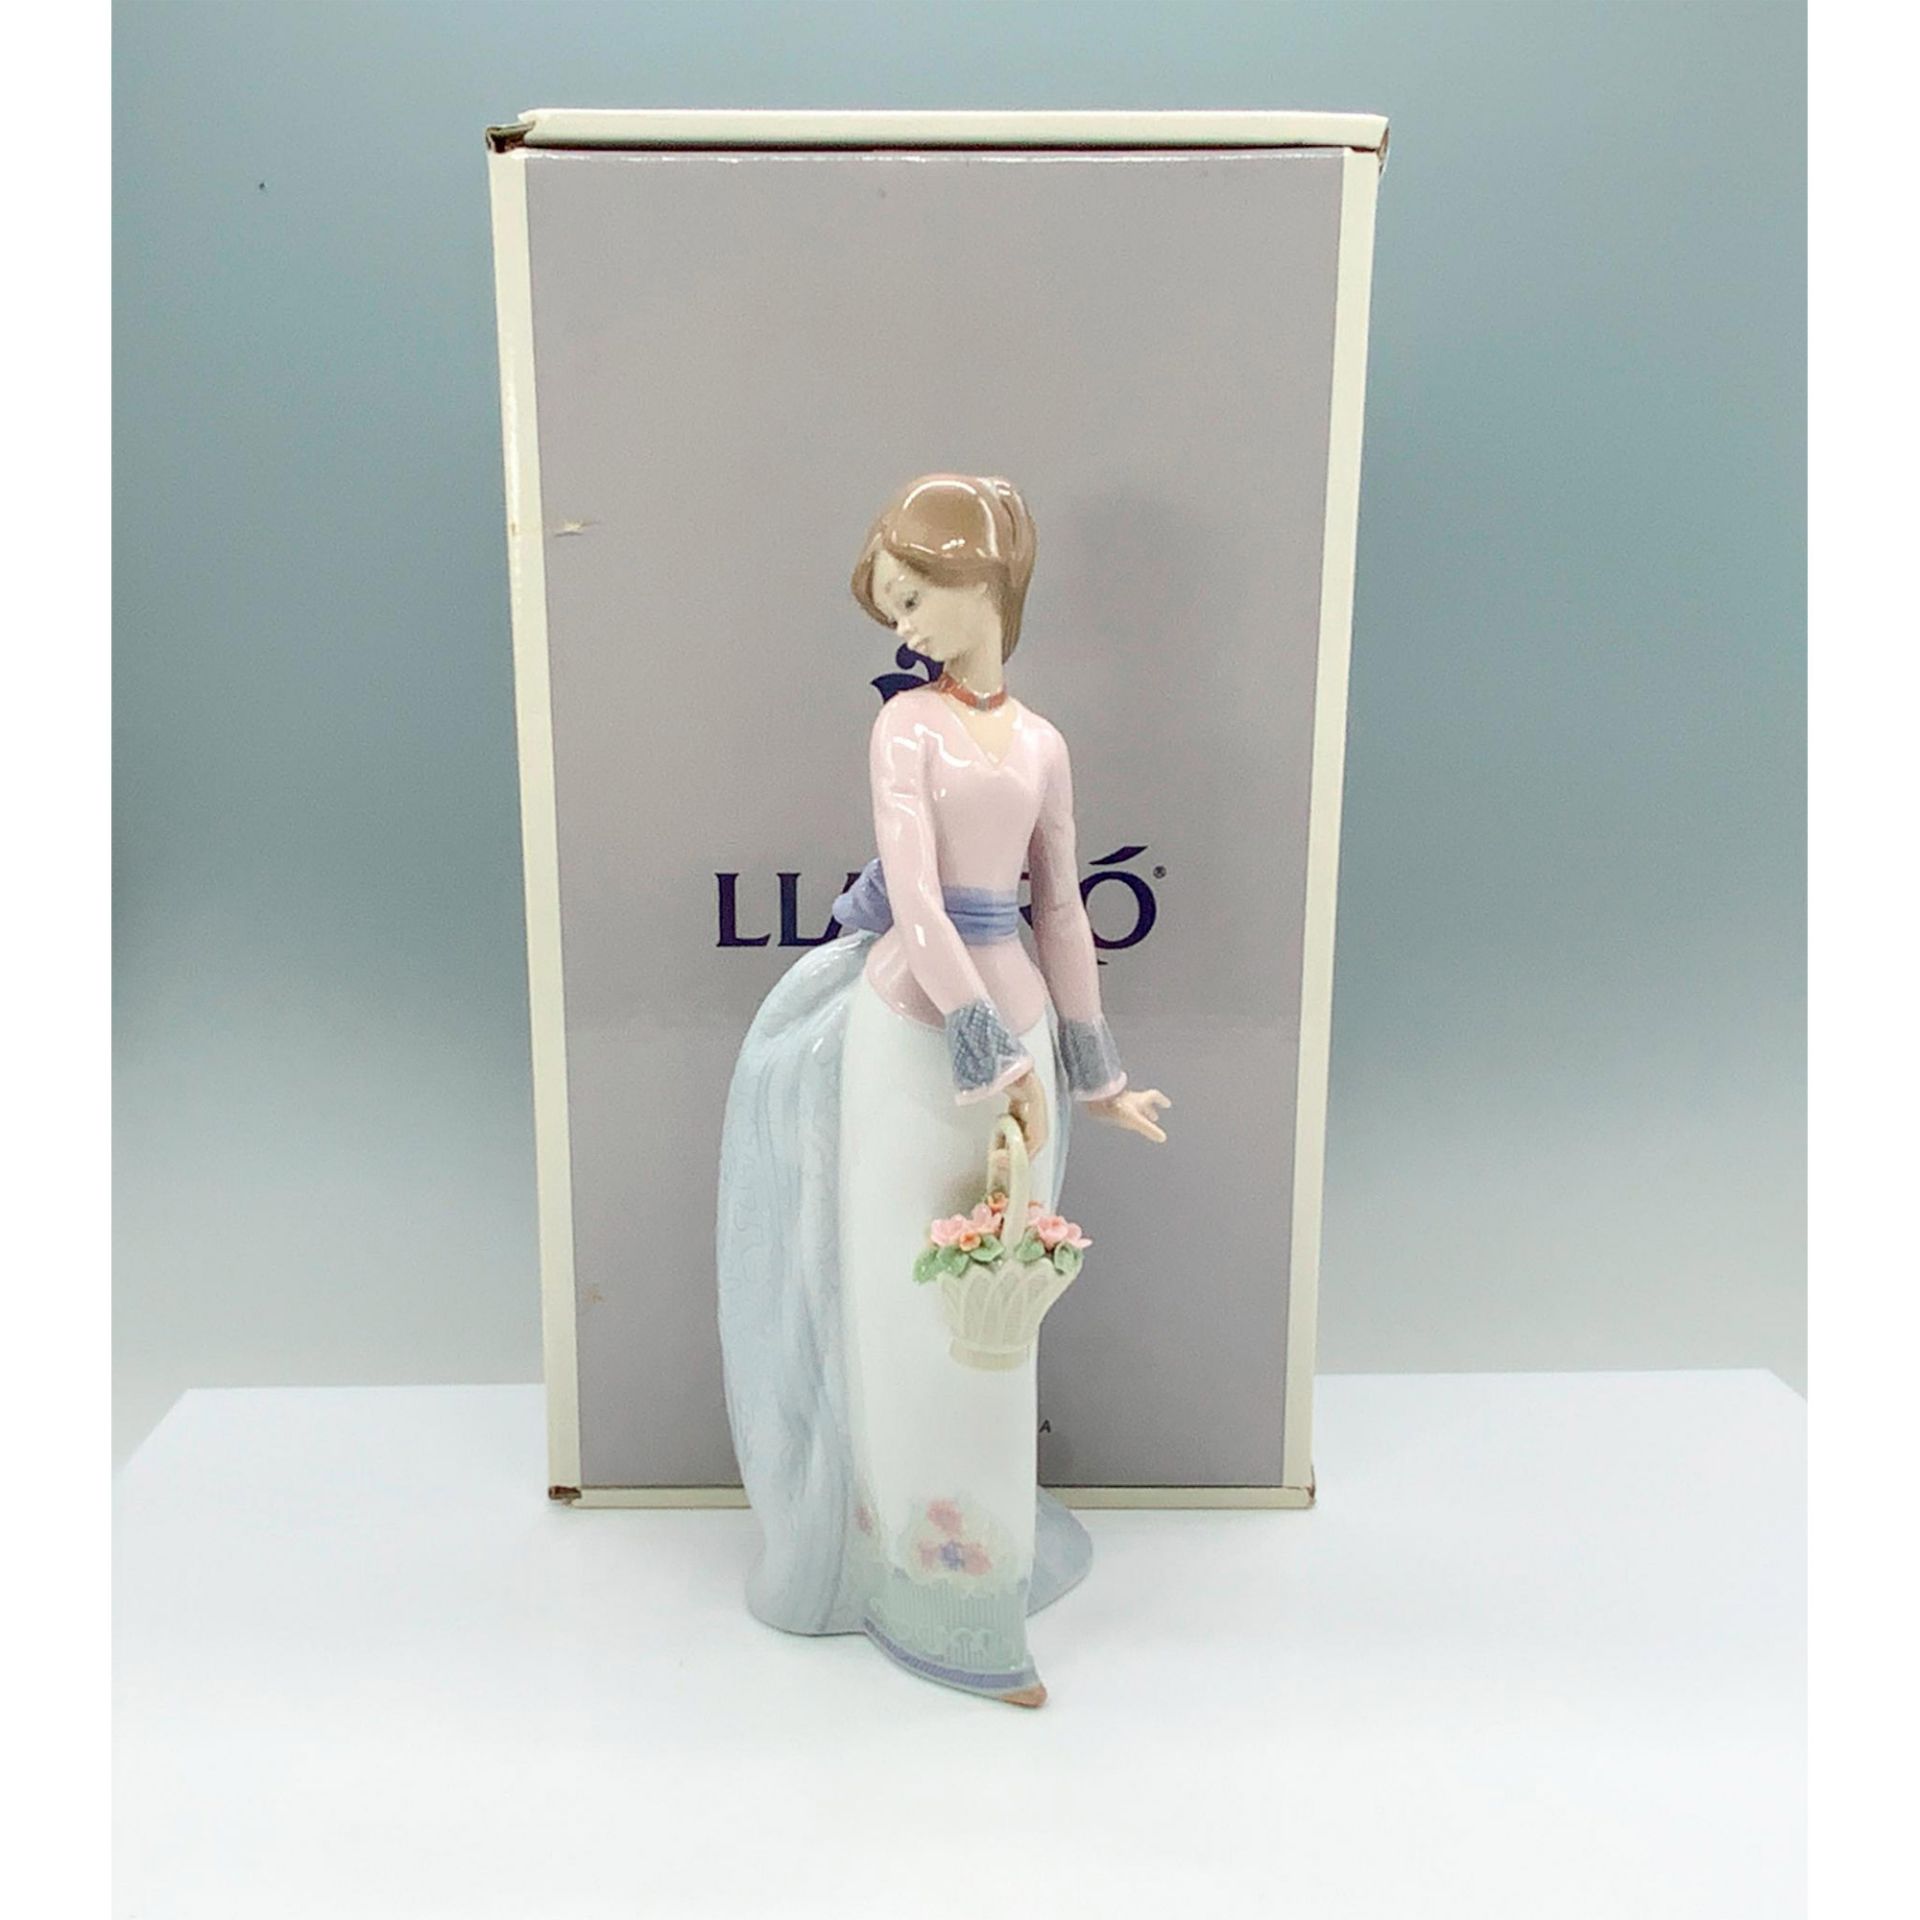 Basket Of Love 1007622 - Lladro Porcelain Figurine - Image 4 of 4